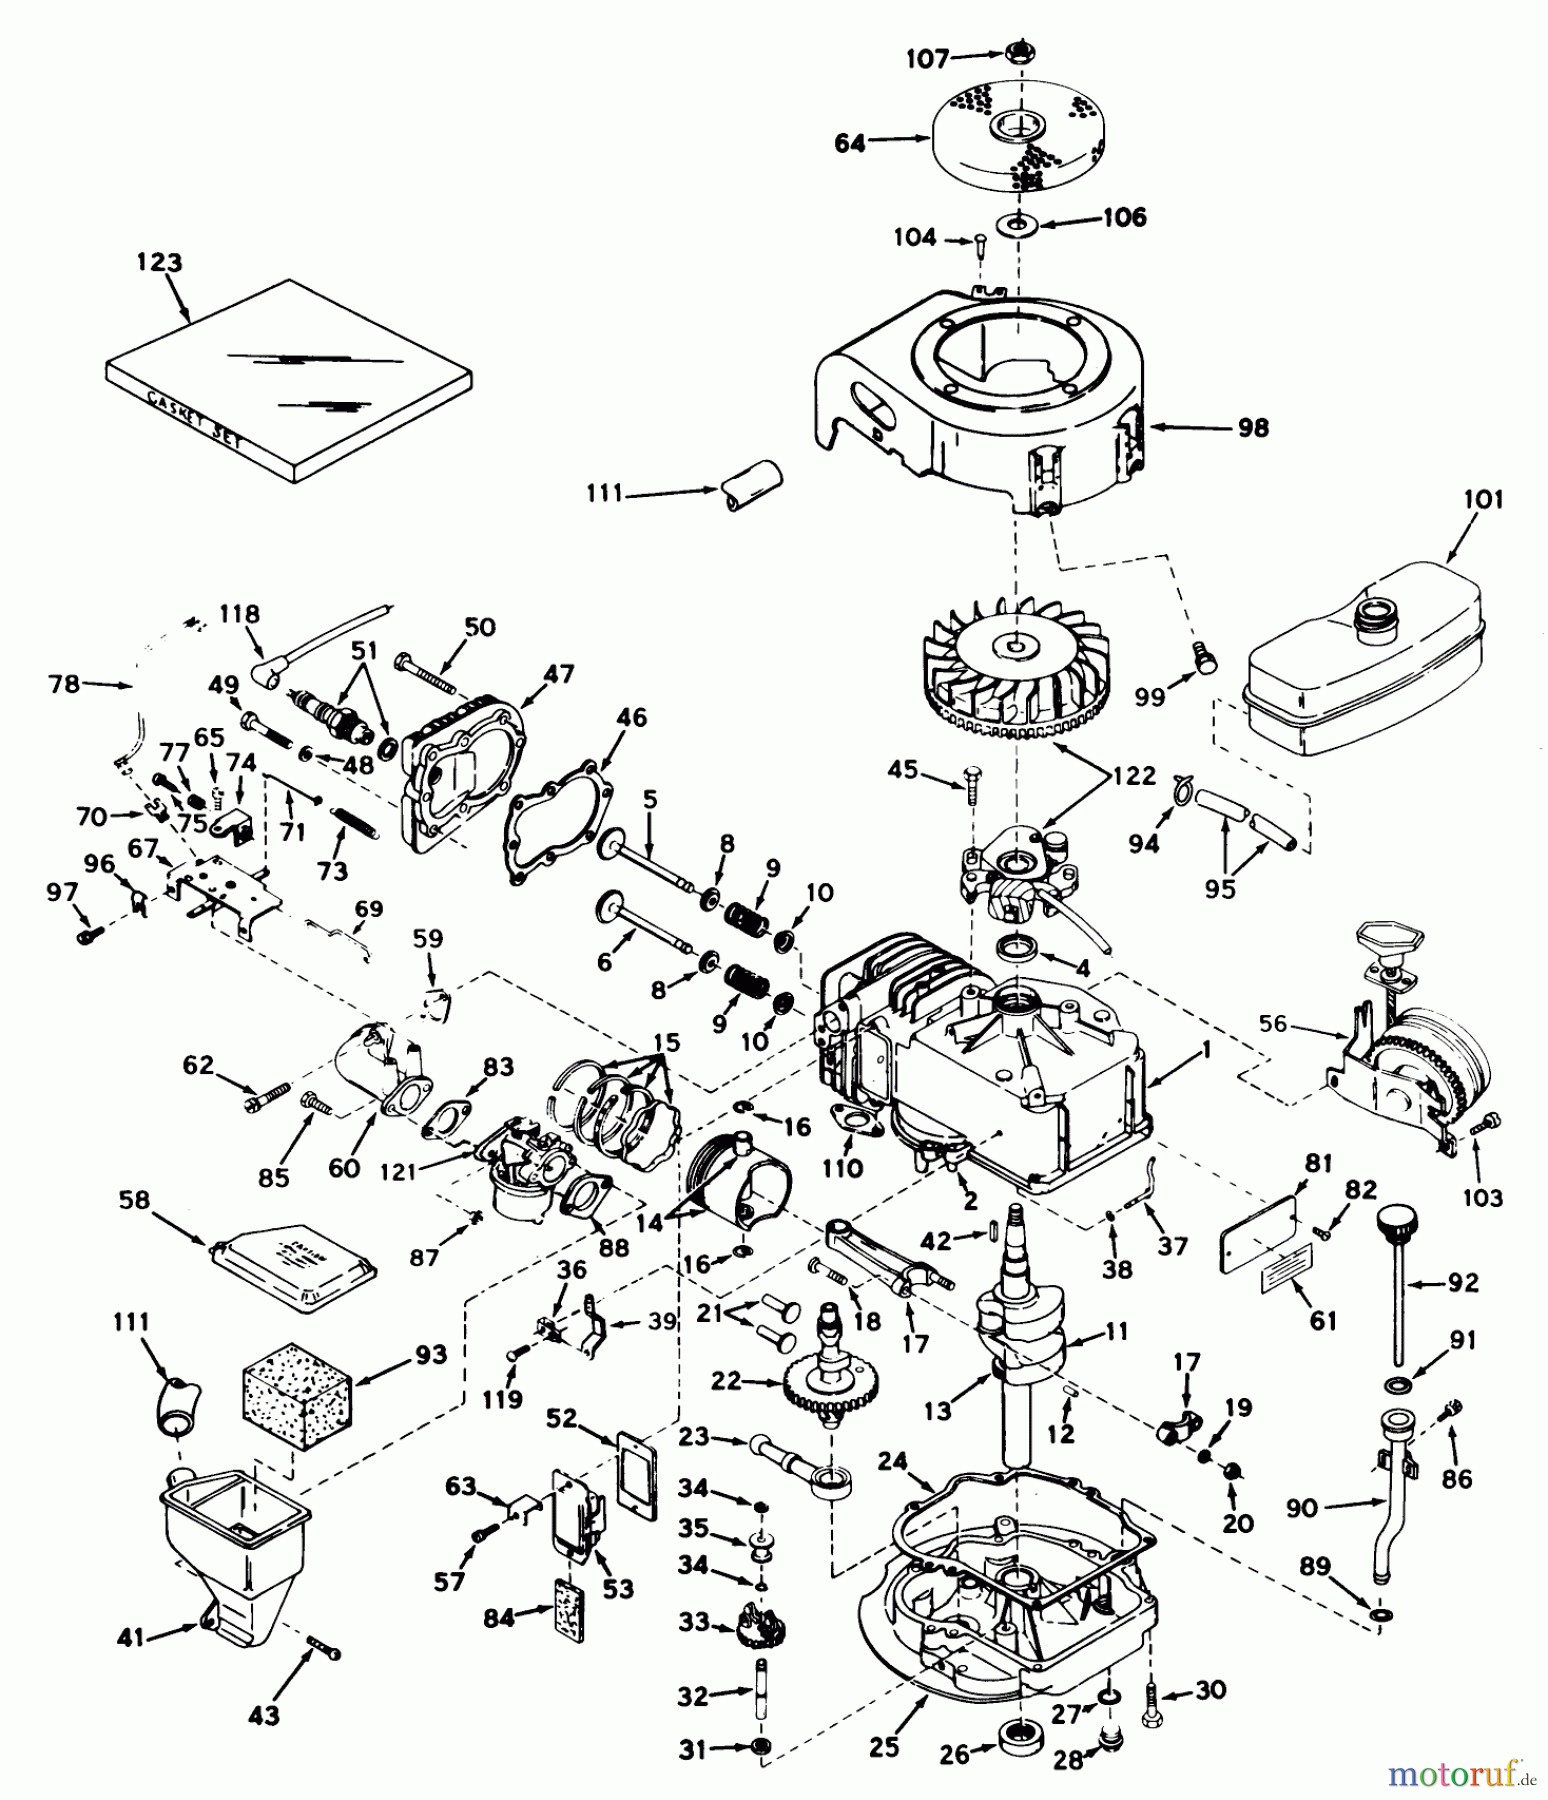  Toro Neu Mowers, Walk-Behind Seite 1 18070 - Toro Lawnmower, 1972 (2000001-2999999) ENGINE TECUMSEH MODEL NO. LAV30-30481K